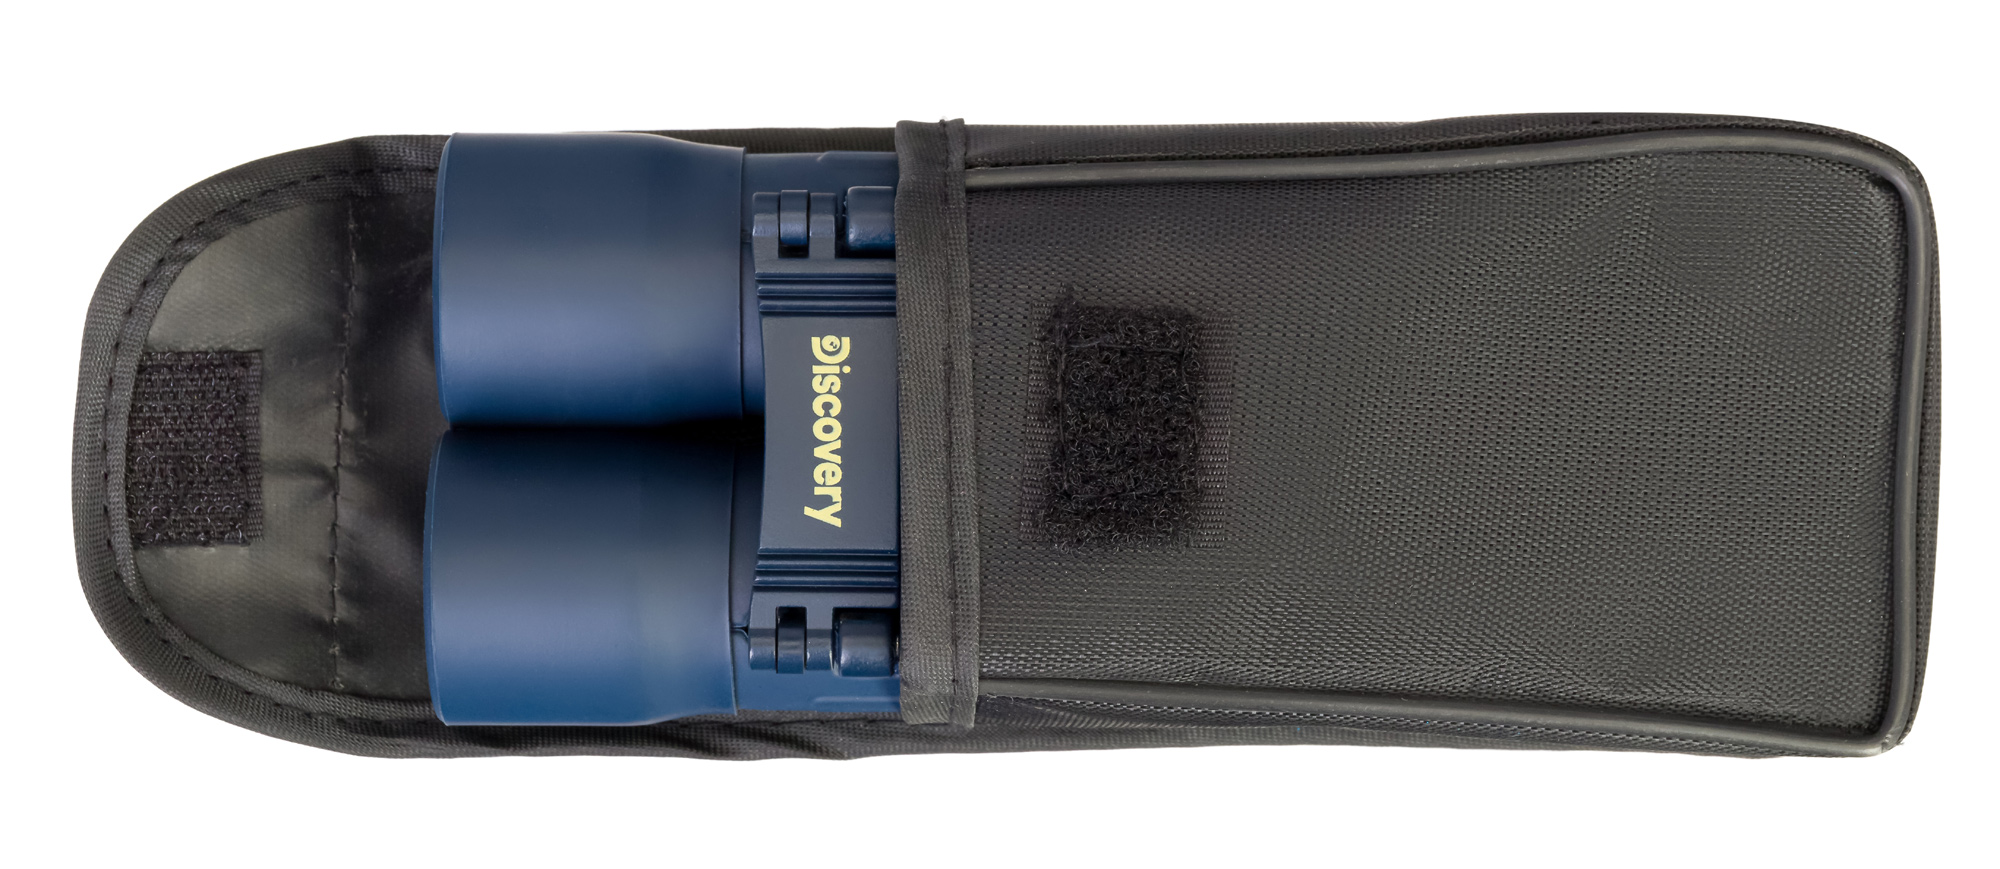 Kompaktní binokulární dalekohled Discovery Basics BB 10x25 je dodáván s ochranným pouzdrem, takže si jej snadno můžete vzít s sebou na dlouhé výlety, odpočinkové procházky či na dobrodružné výpravy a expedice.